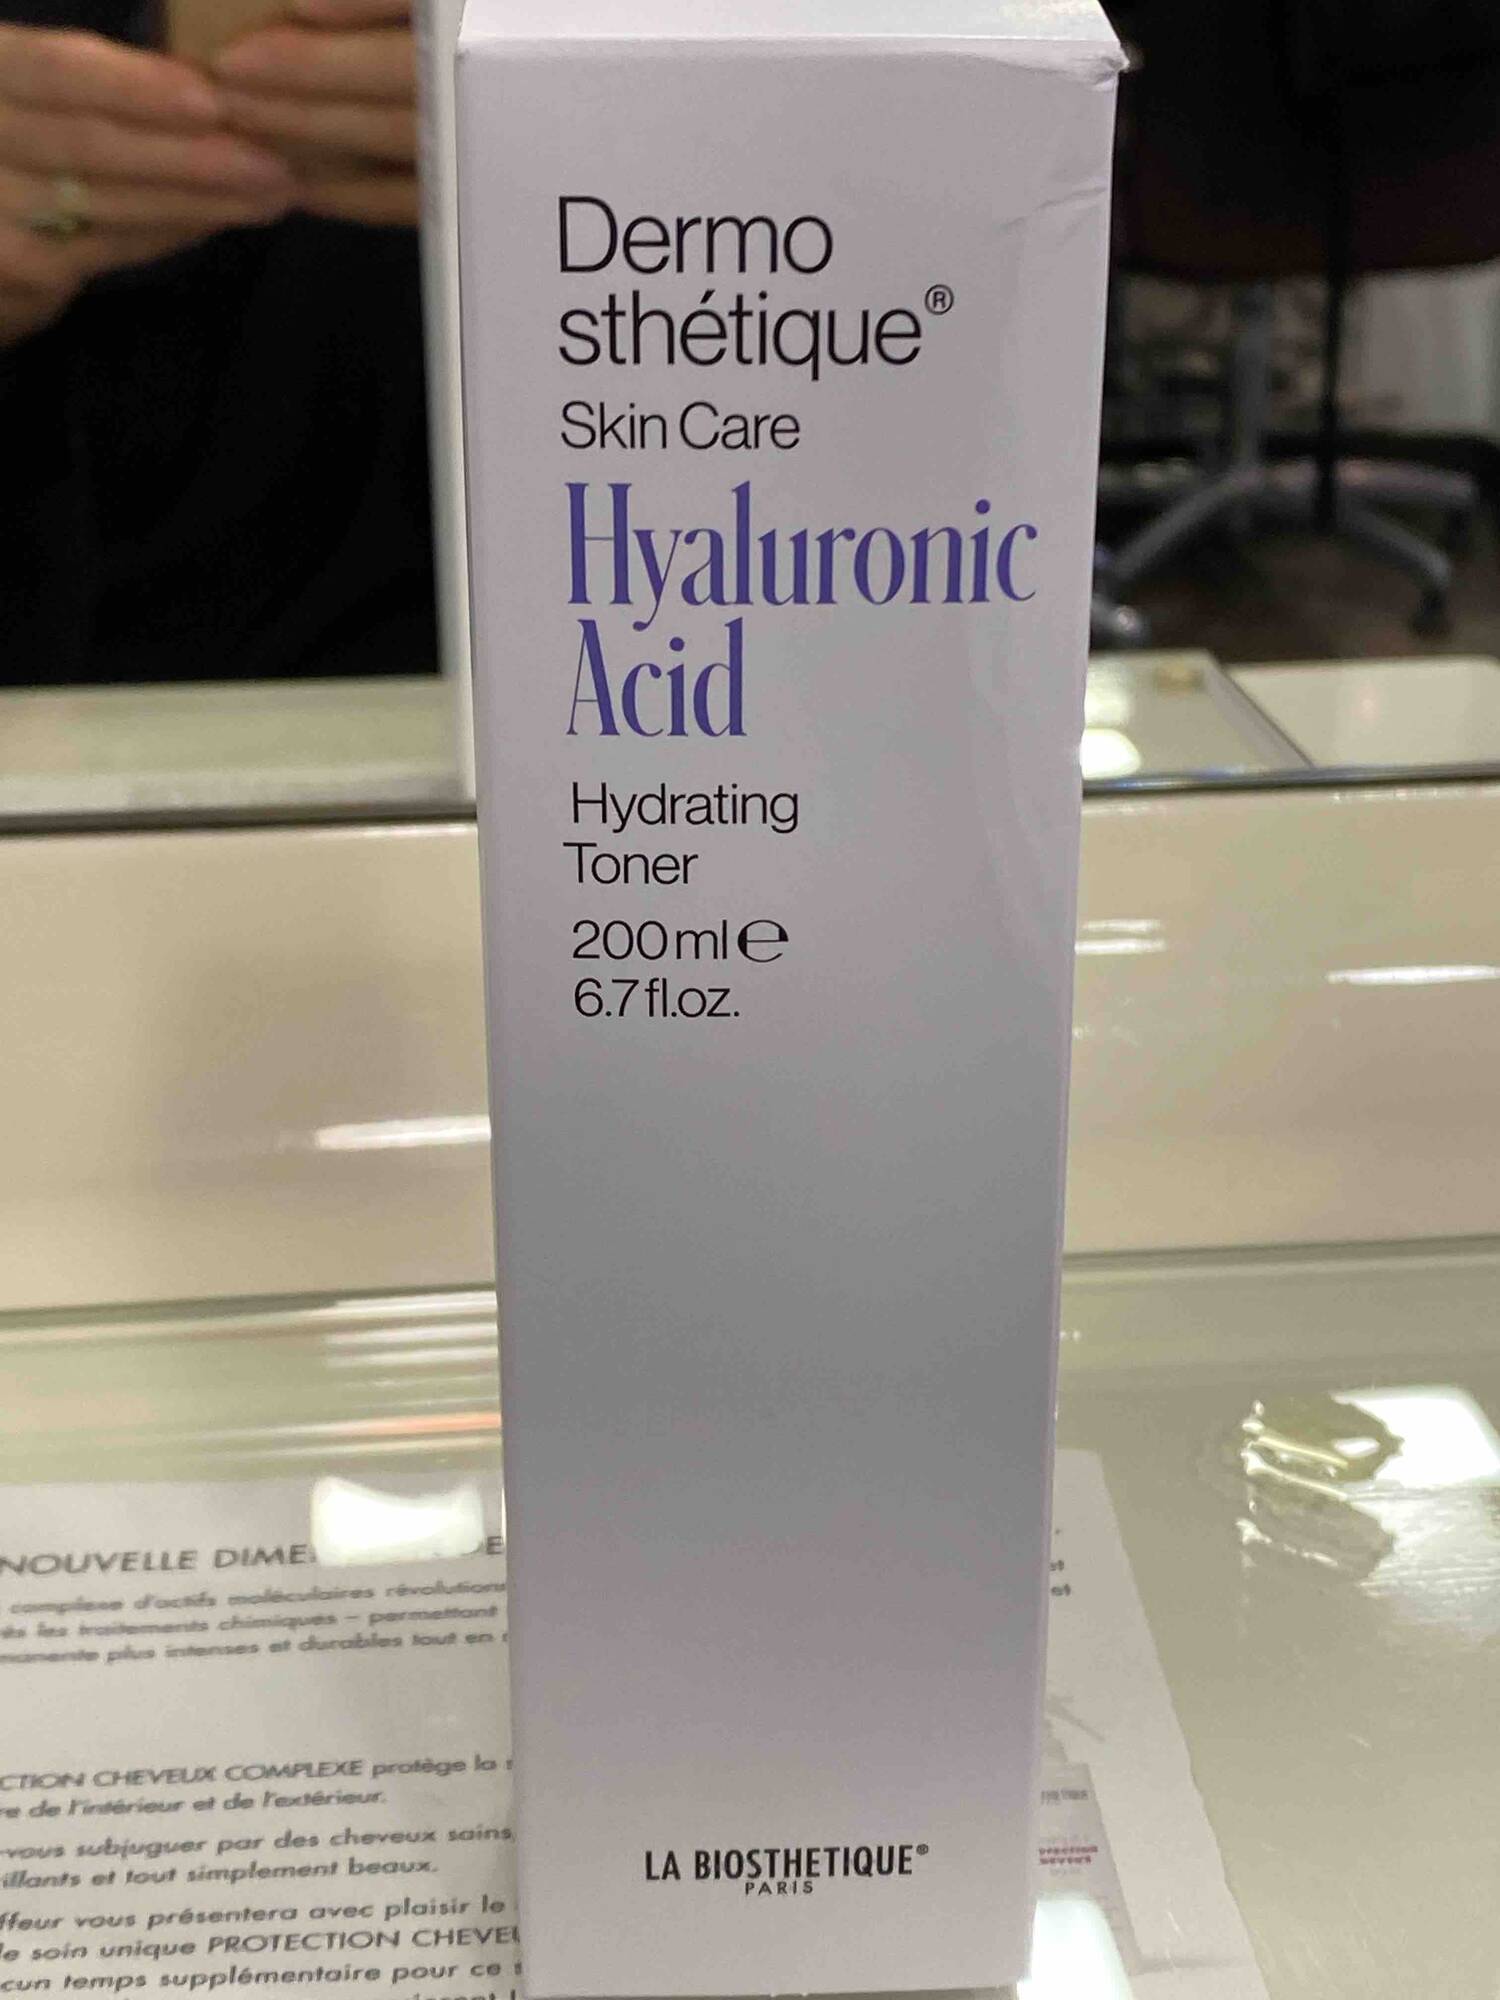 LA BIOSTHETIQUE - Dermosthétique Hyaluronic acid - Hydrating toner